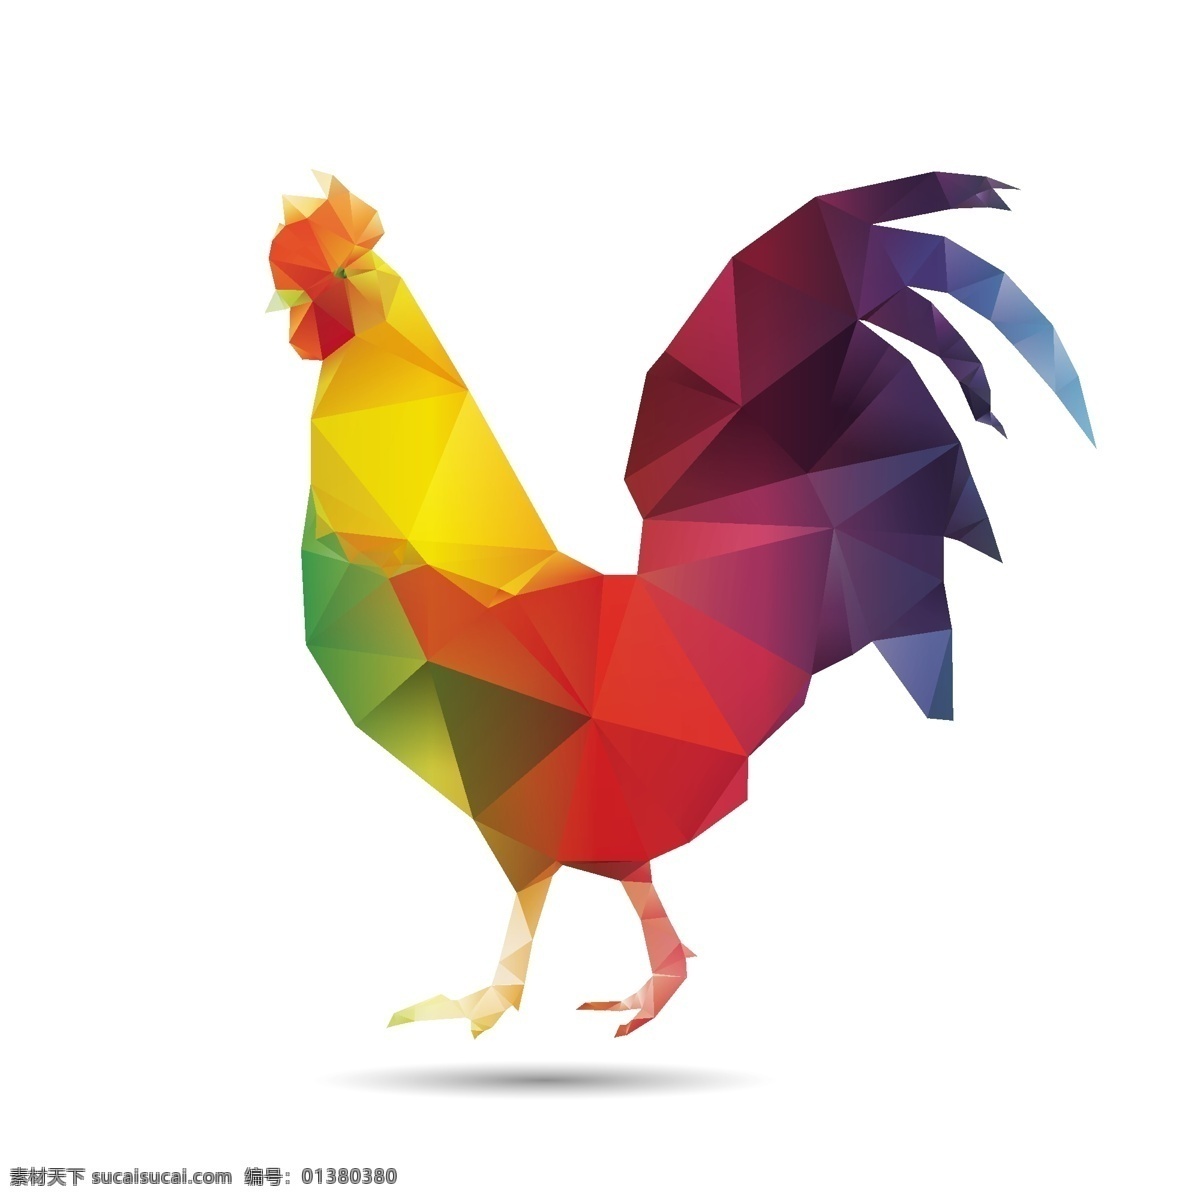 时尚公鸡设计 公鸡设计素材 彩色 图案 公鸡 卡通鸡 几何拼接公鸡 卡通设计